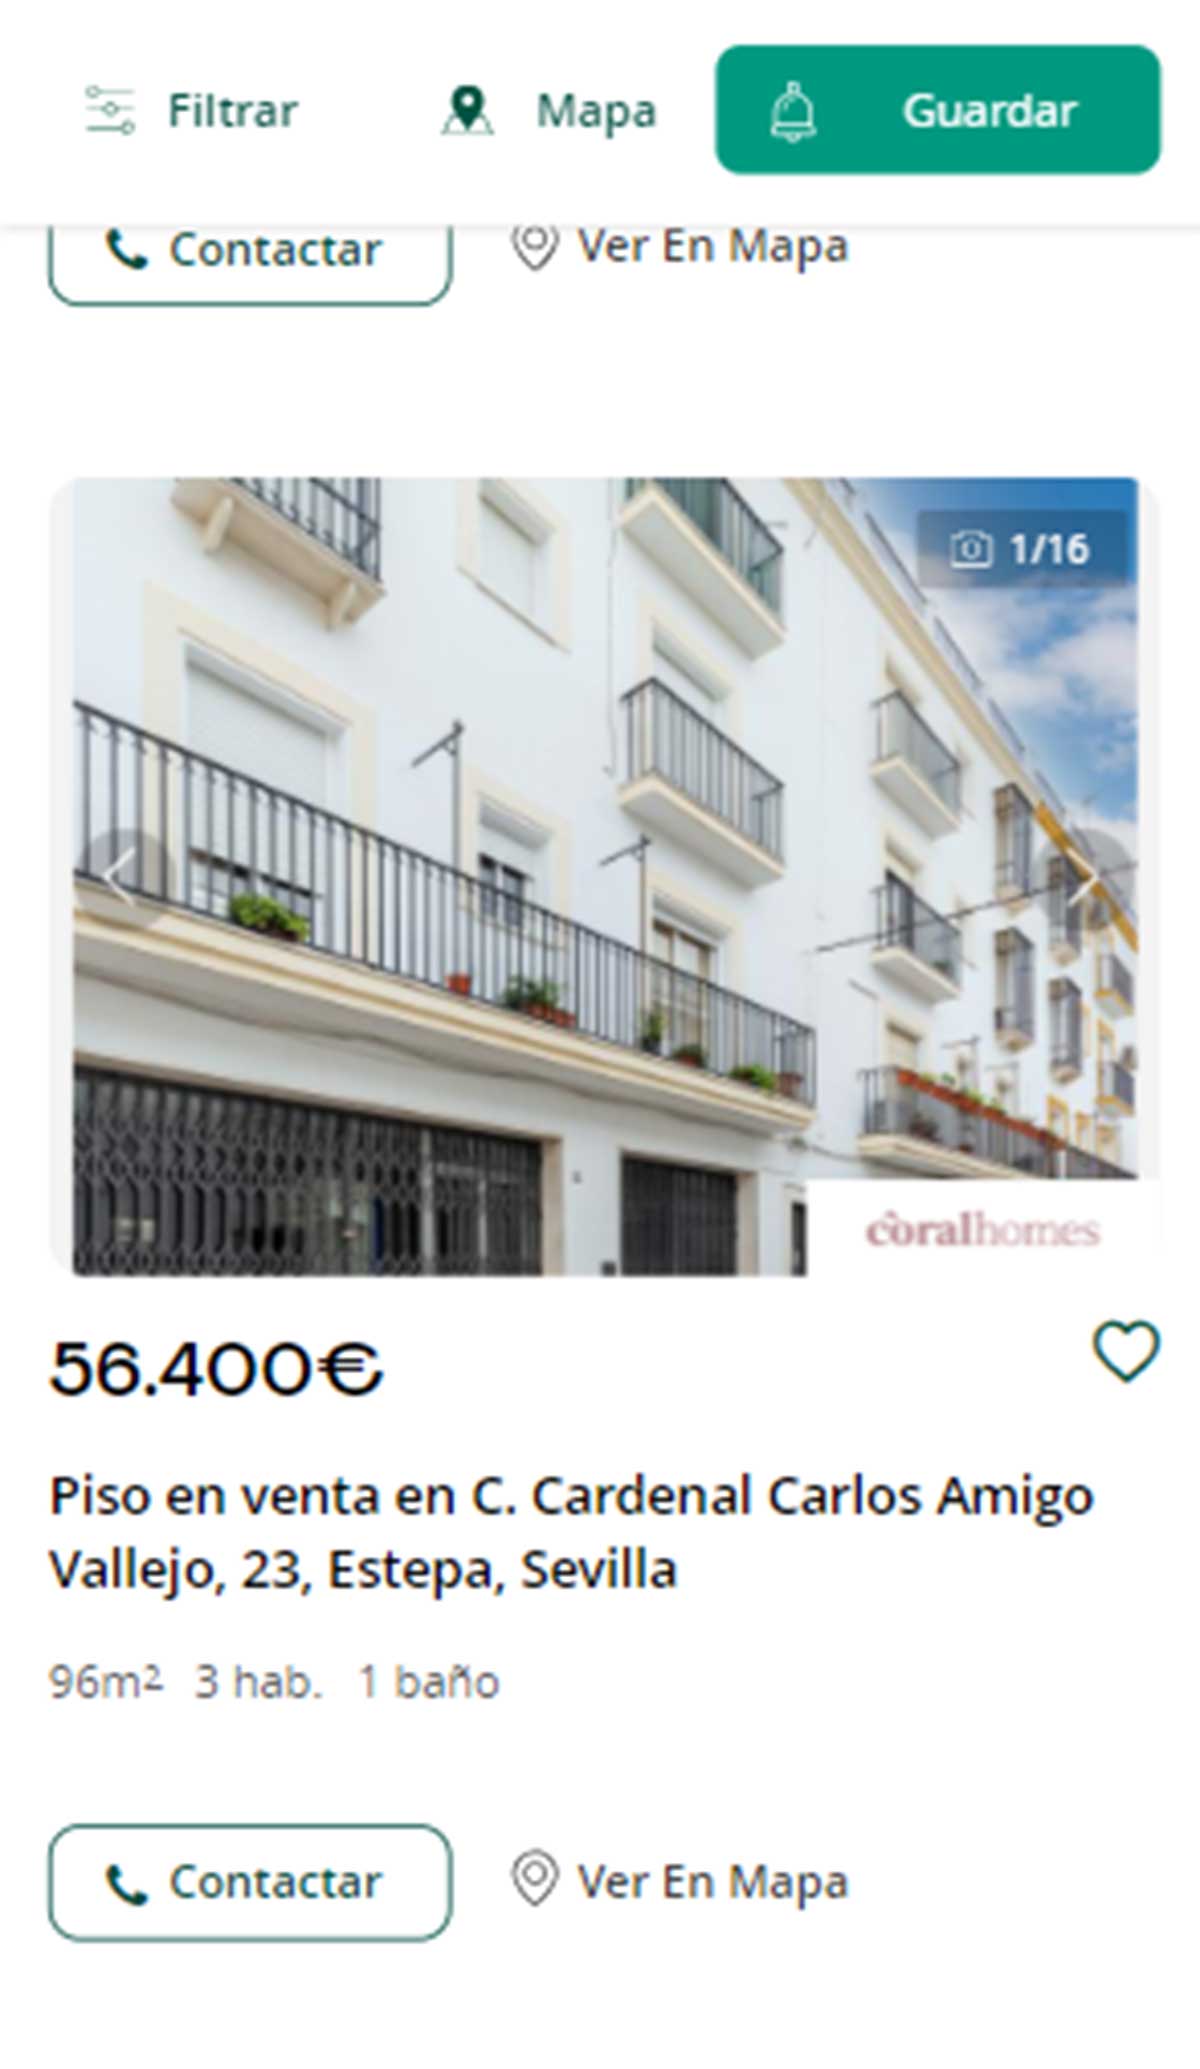 Piso en Sevilla por 56.000 euros